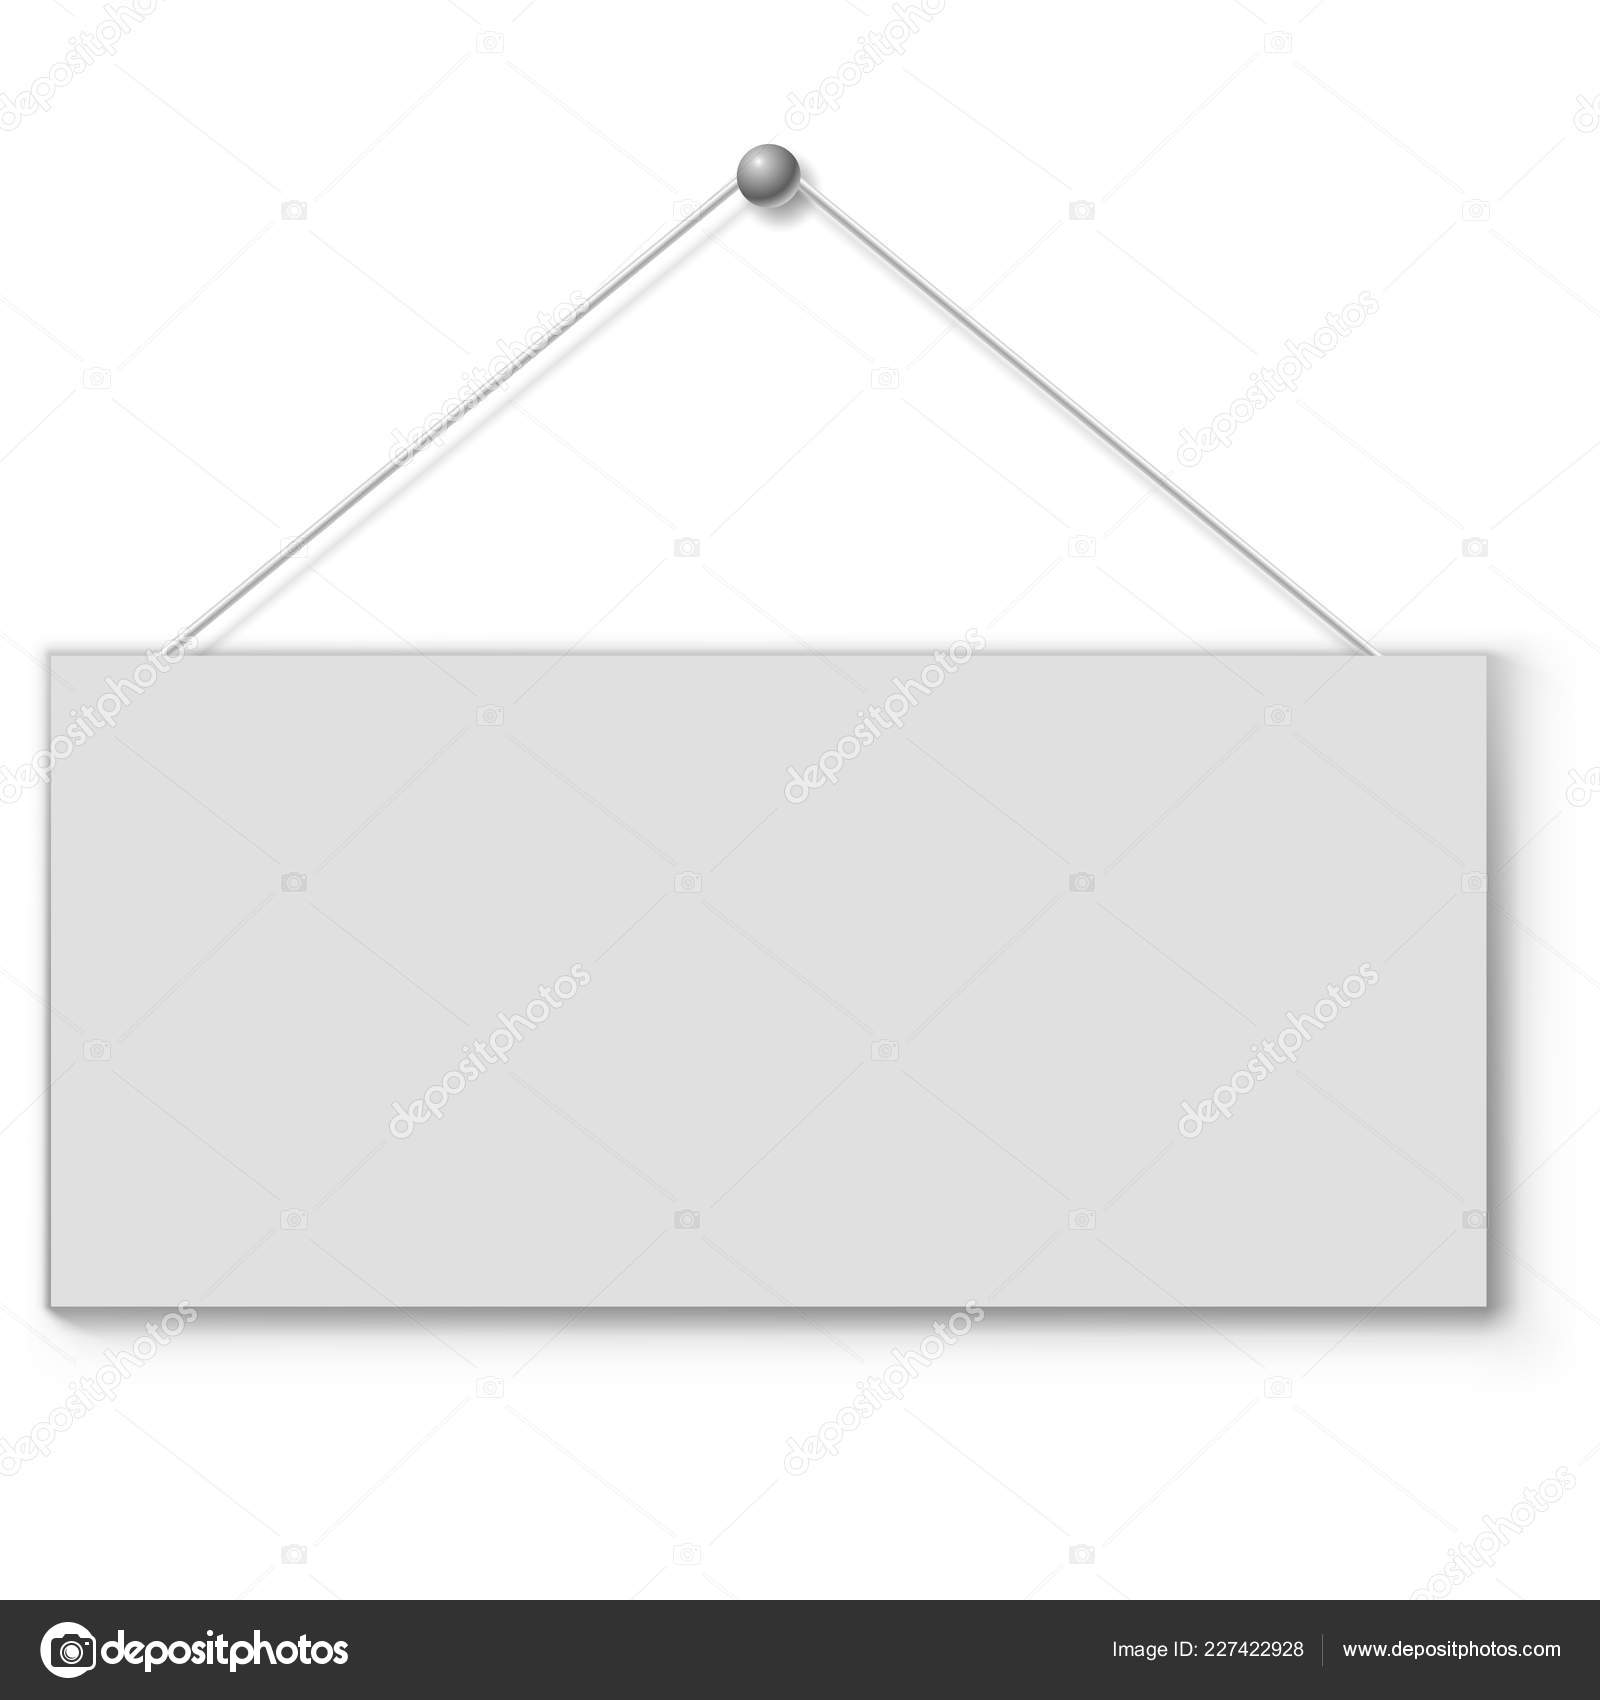 https://st4.depositphotos.com/1000868/22742/v/1600/depositphotos_227422928-stock-illustration-blank-white-door-plate-hanging.jpg